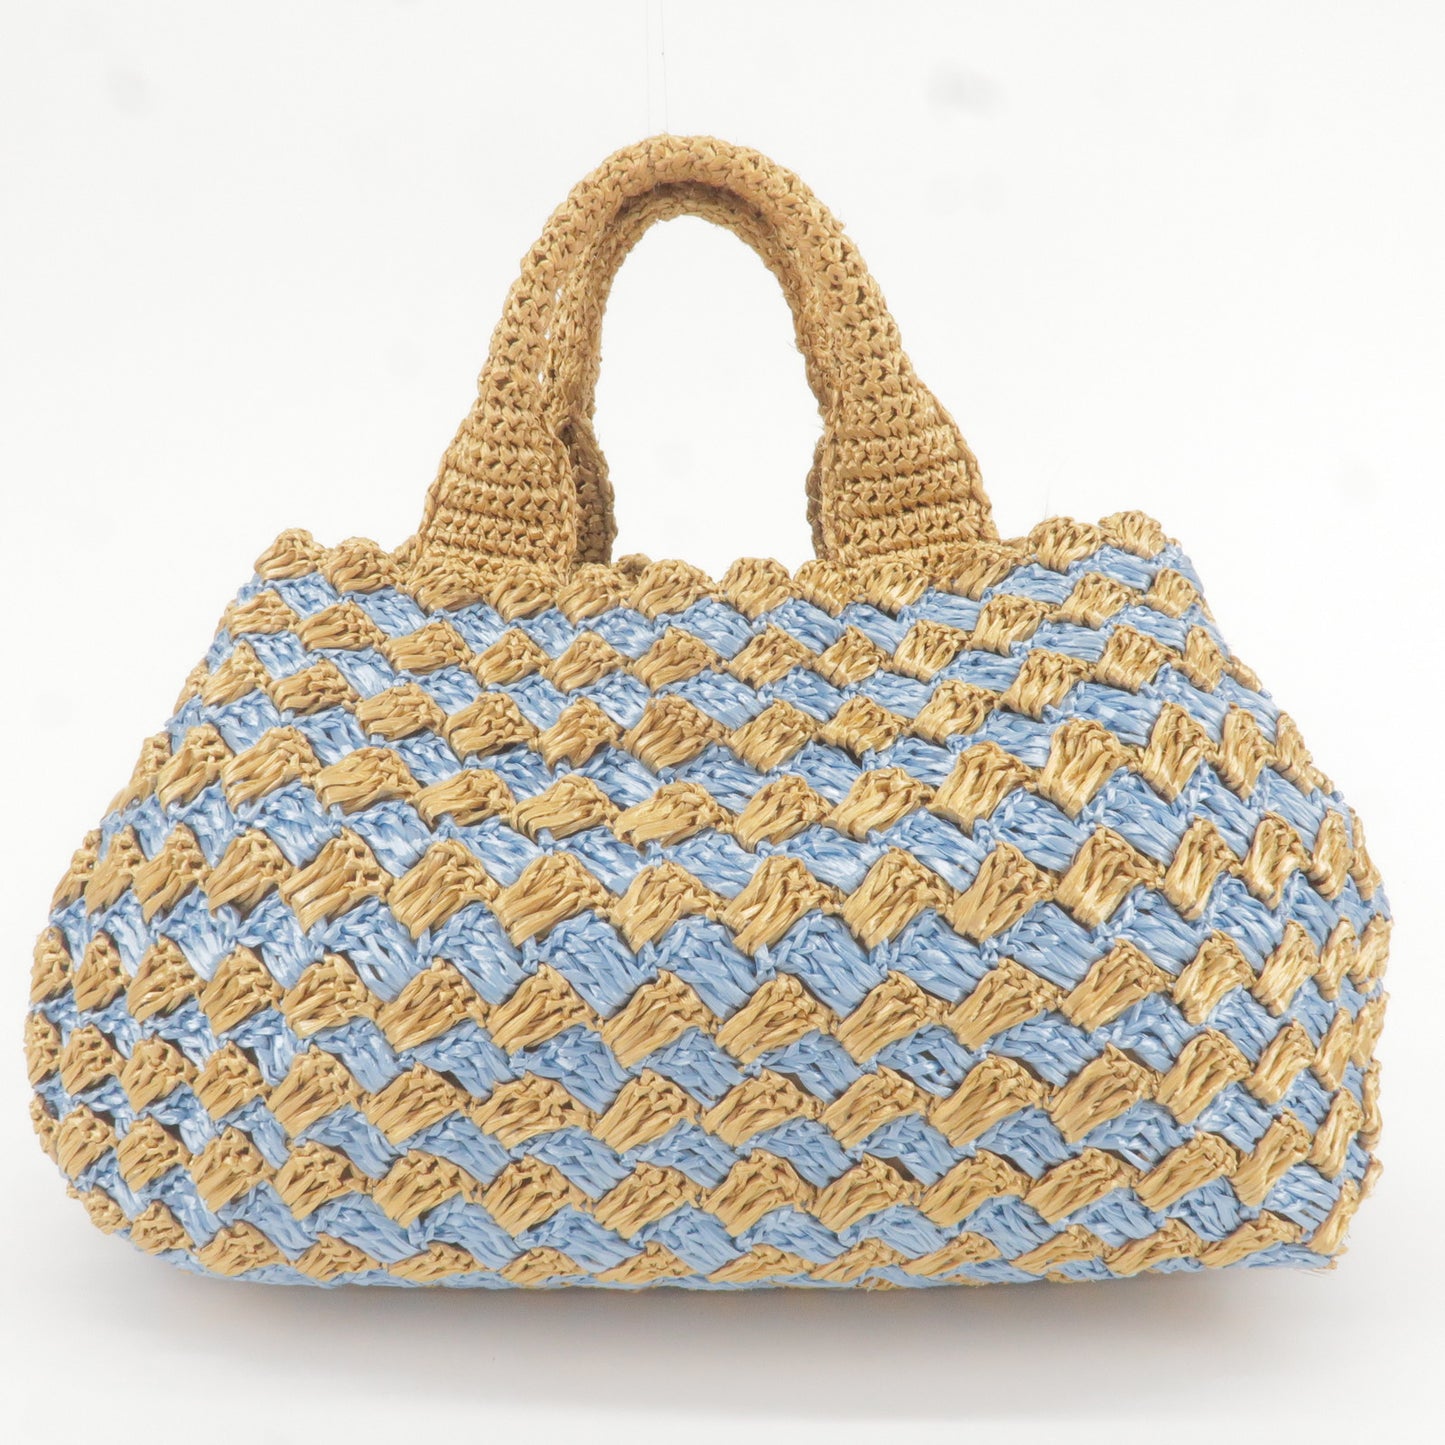 Prada Black logoed crochet tote bag